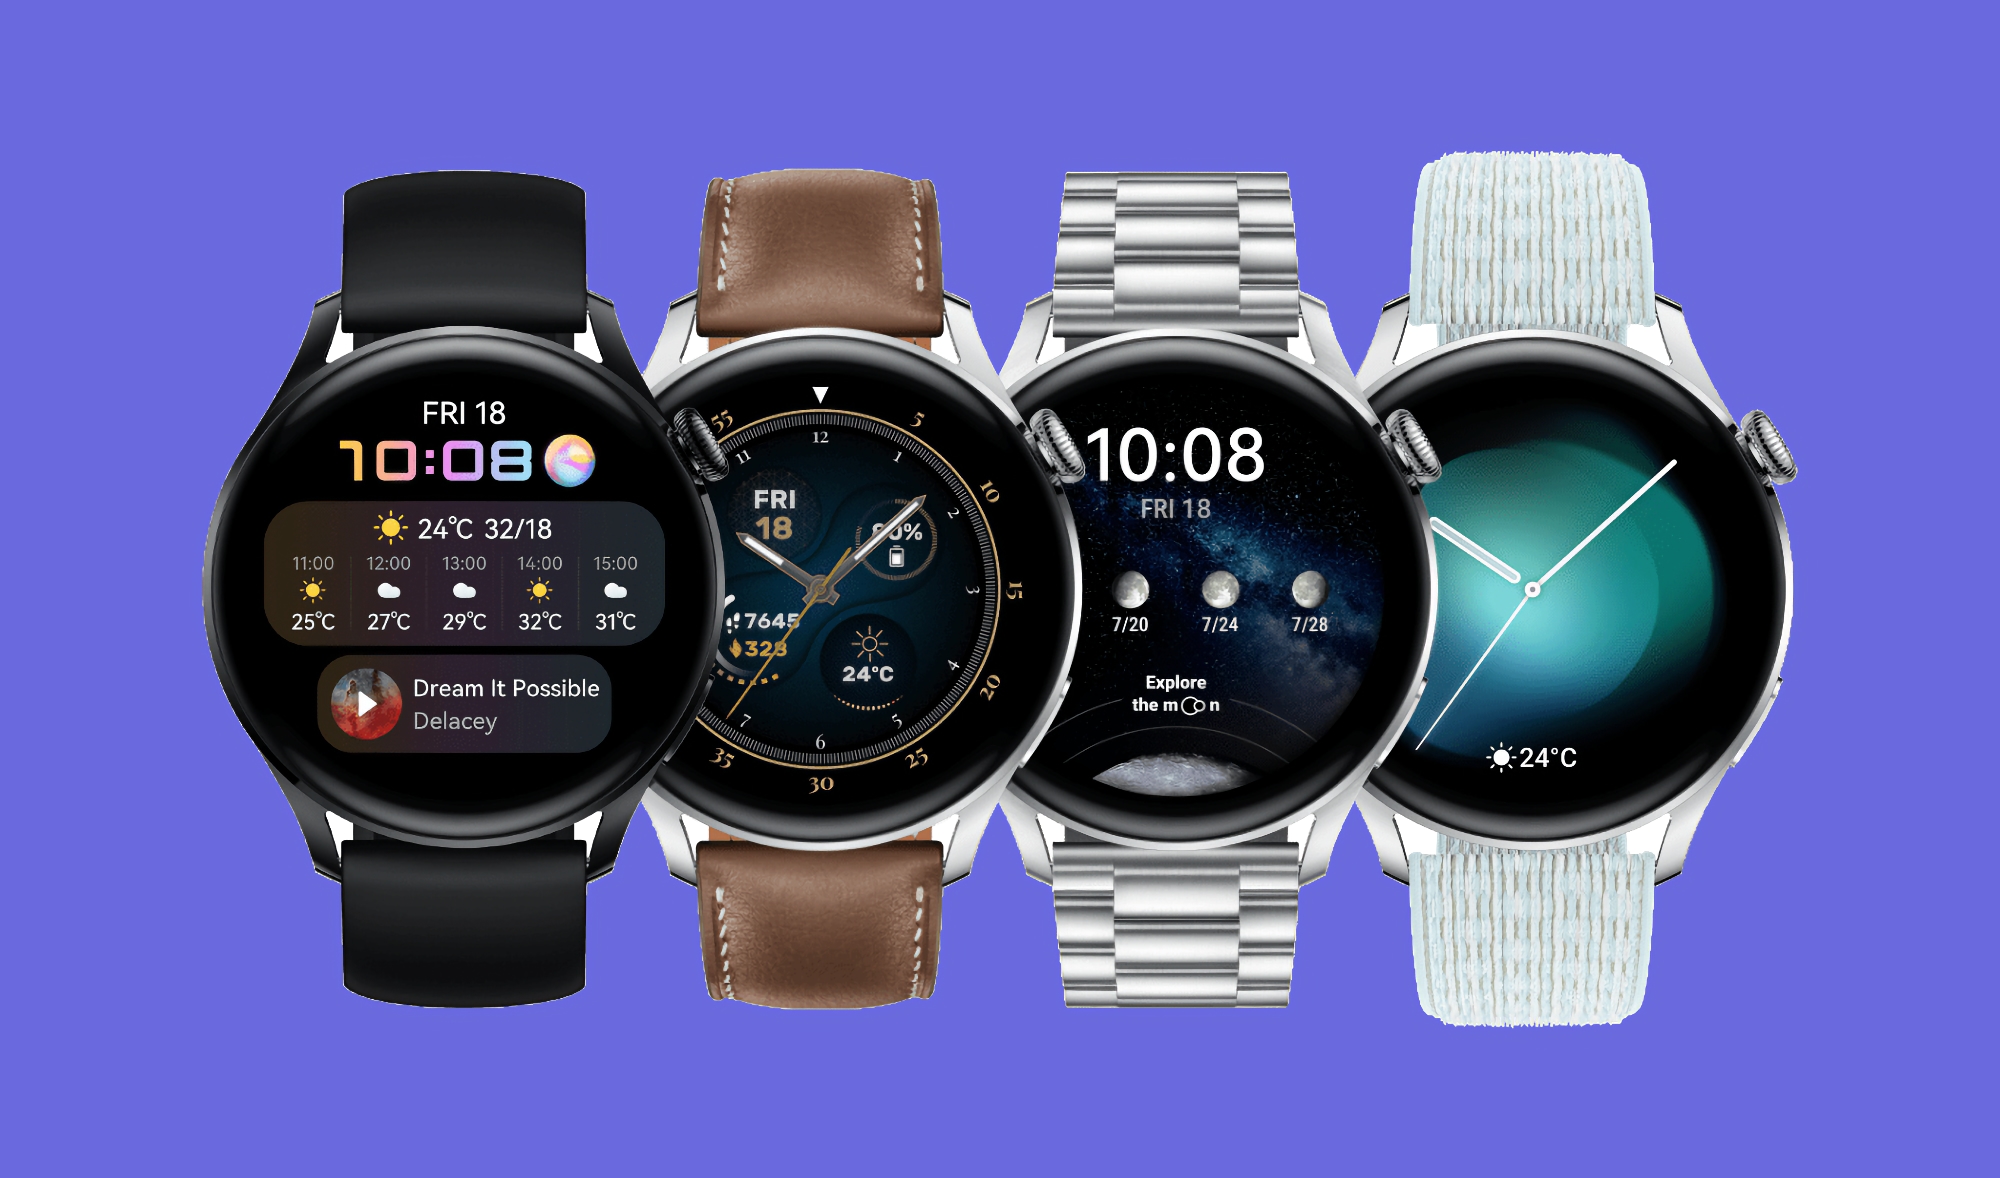 Huawei Watch 3 y Huawei Watch 3 Pro han comenzado a recibir una nueva actualización de software en el mercado global